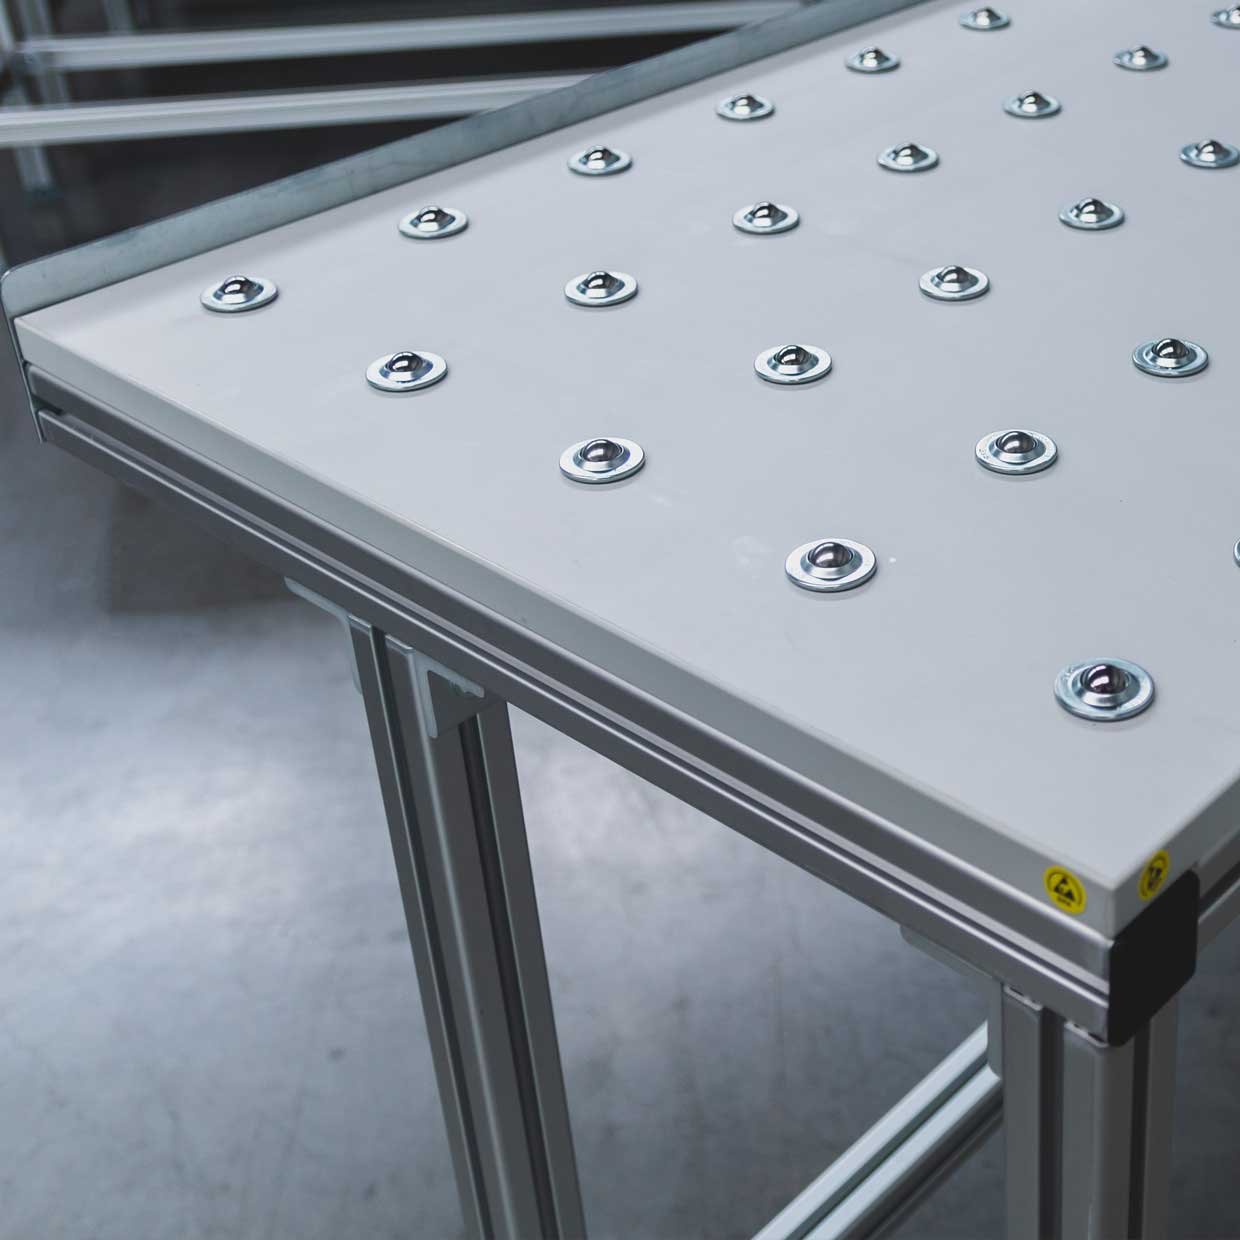 Blat de masă echipat cu inserții sferice pentru frecarea redusă, încorporate într-o construcție realizată din profile pătrate de aluminiu